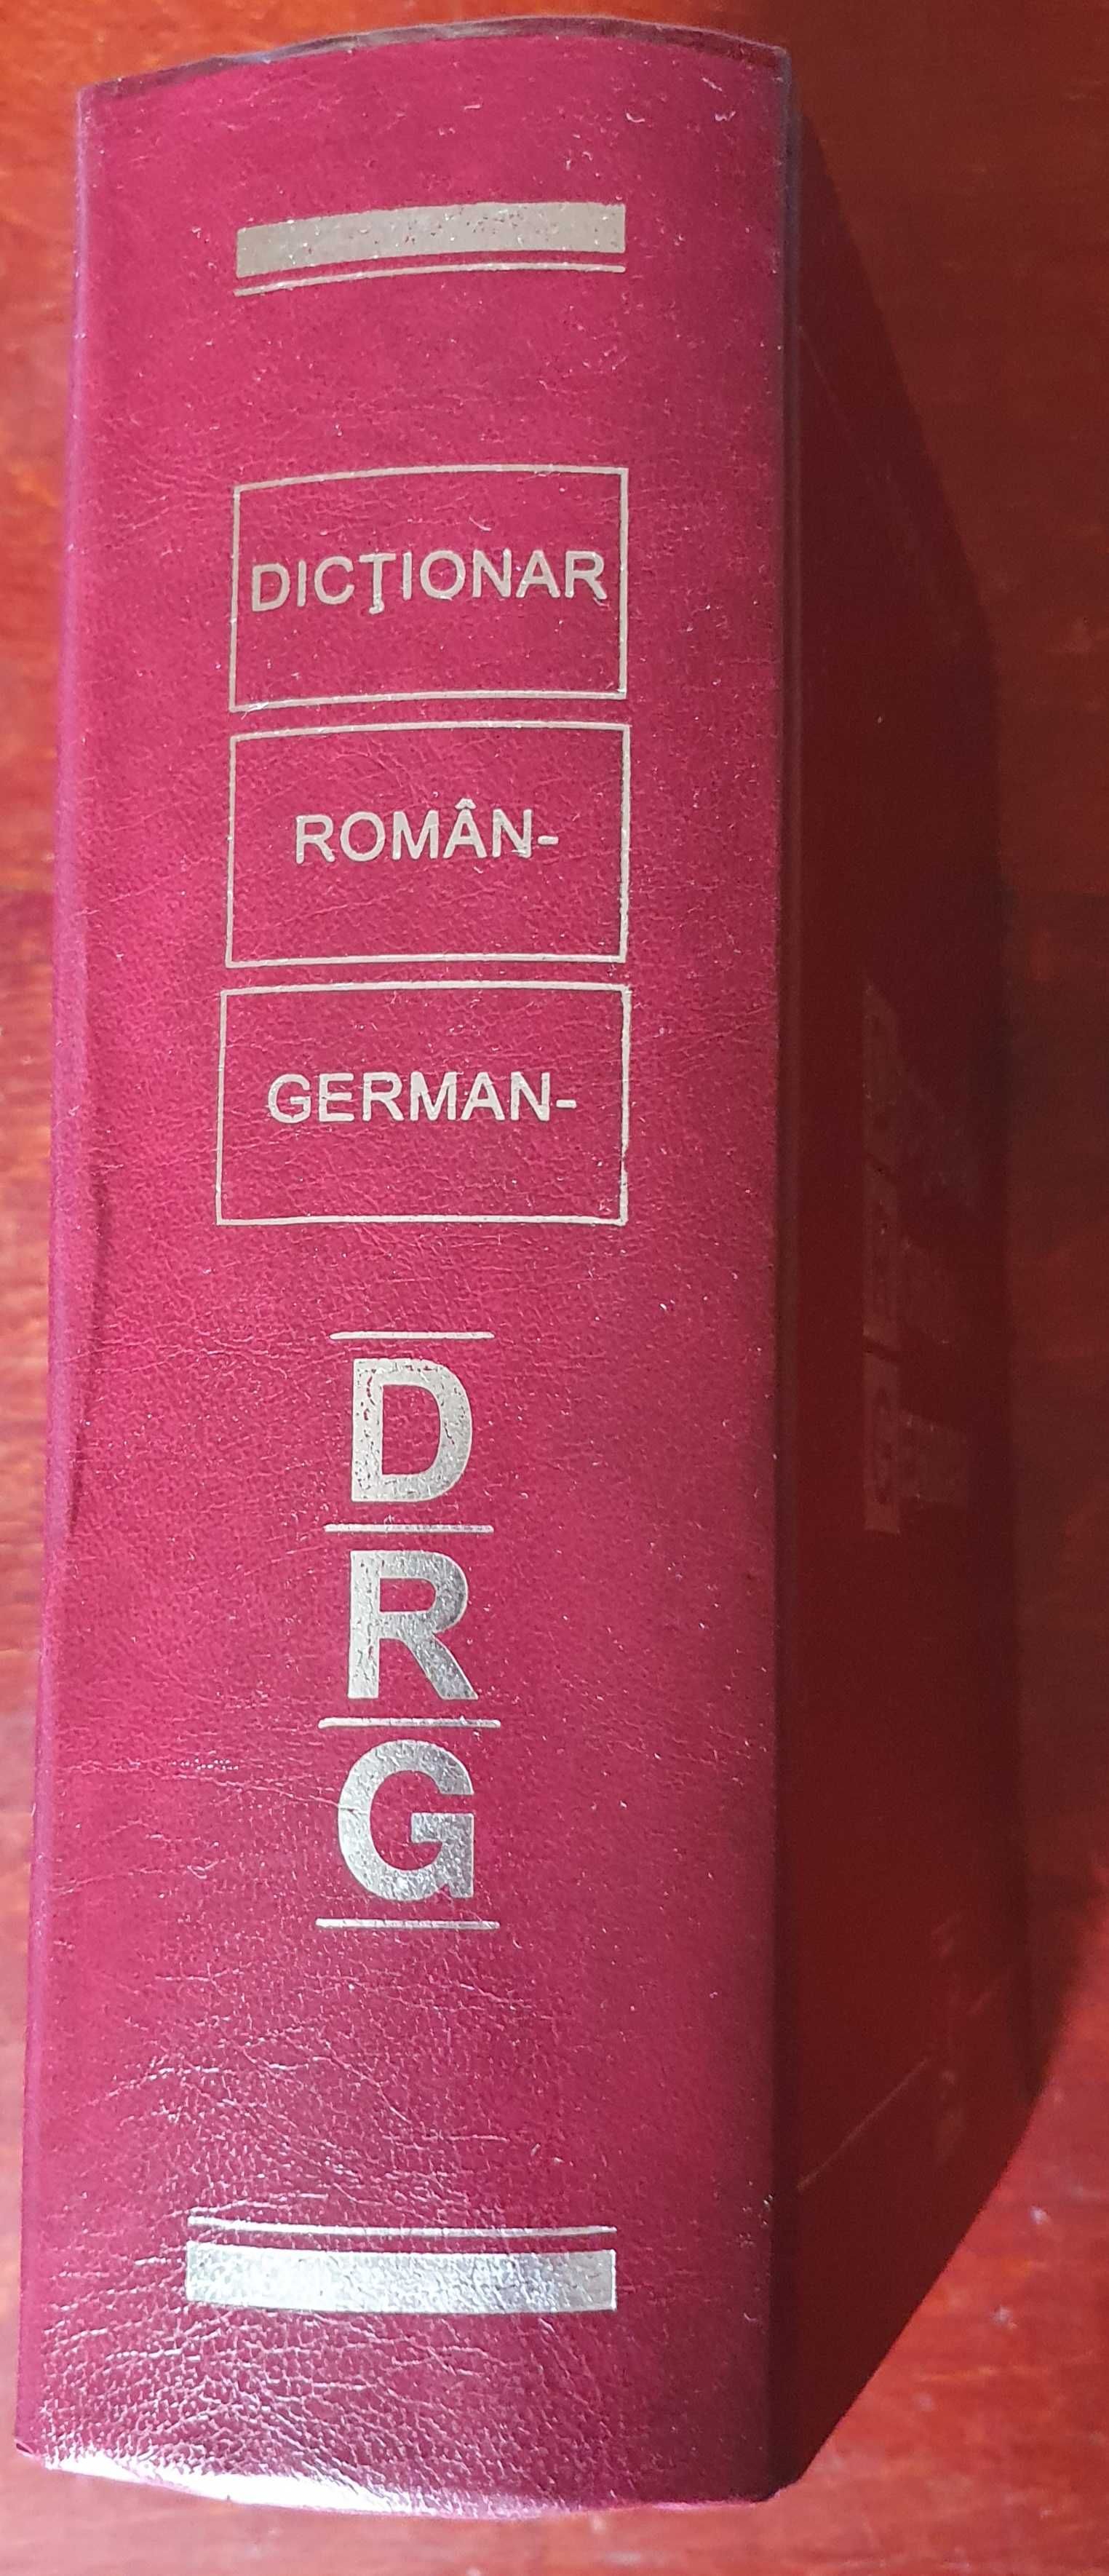 DICTIONAR  ROMAN  GERMAN -
Mihai Anutei -
Editura Lucman